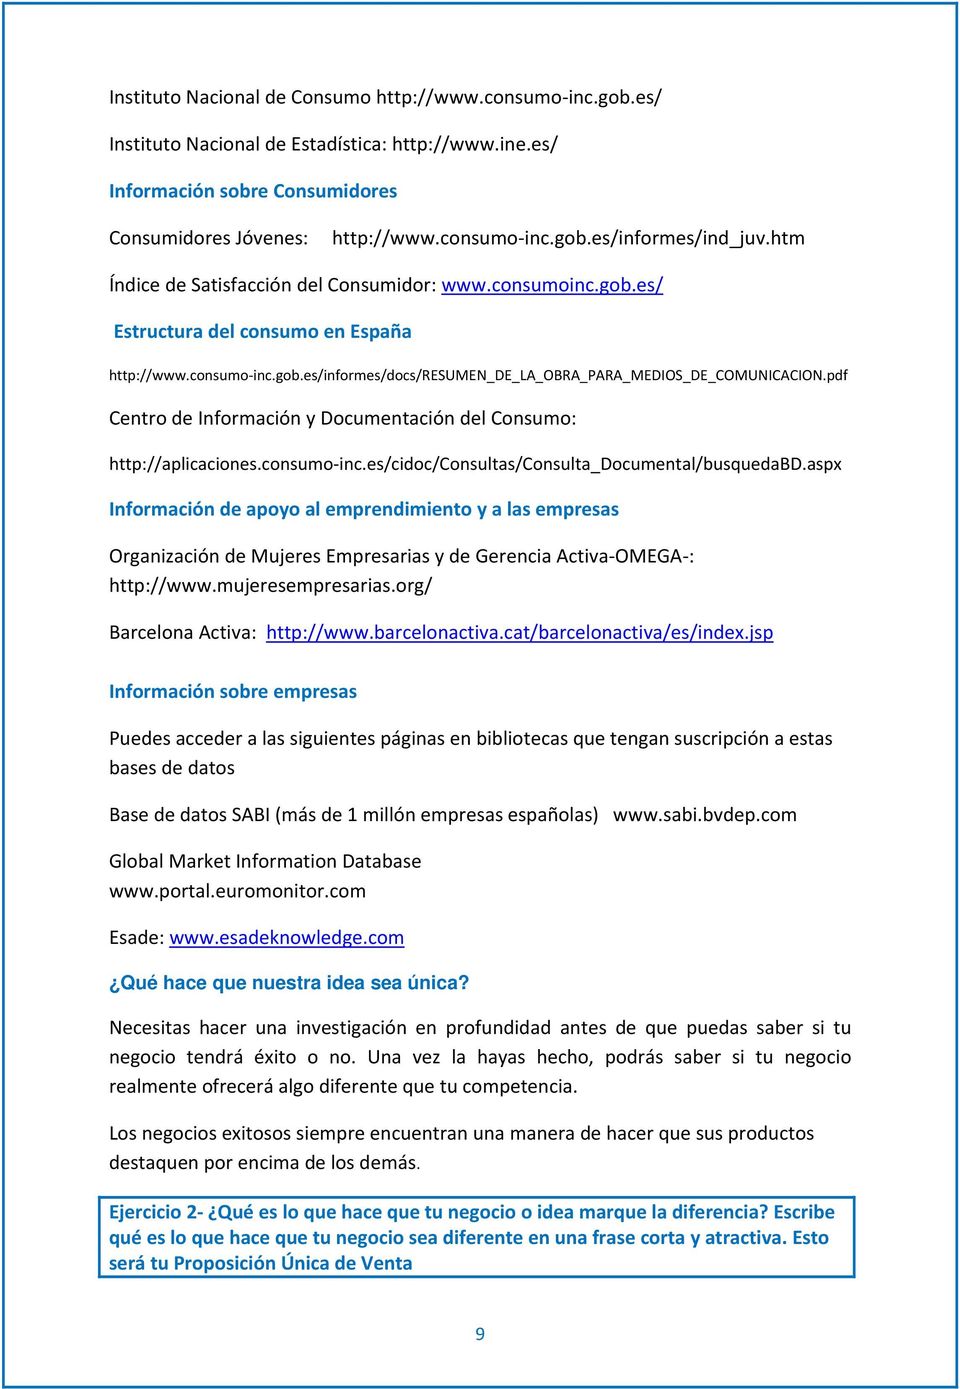 pdf Centro de Información y Documentación del Consumo: http://aplicaciones.consumo inc.es/cidoc/consultas/consulta_documental/busquedabd.